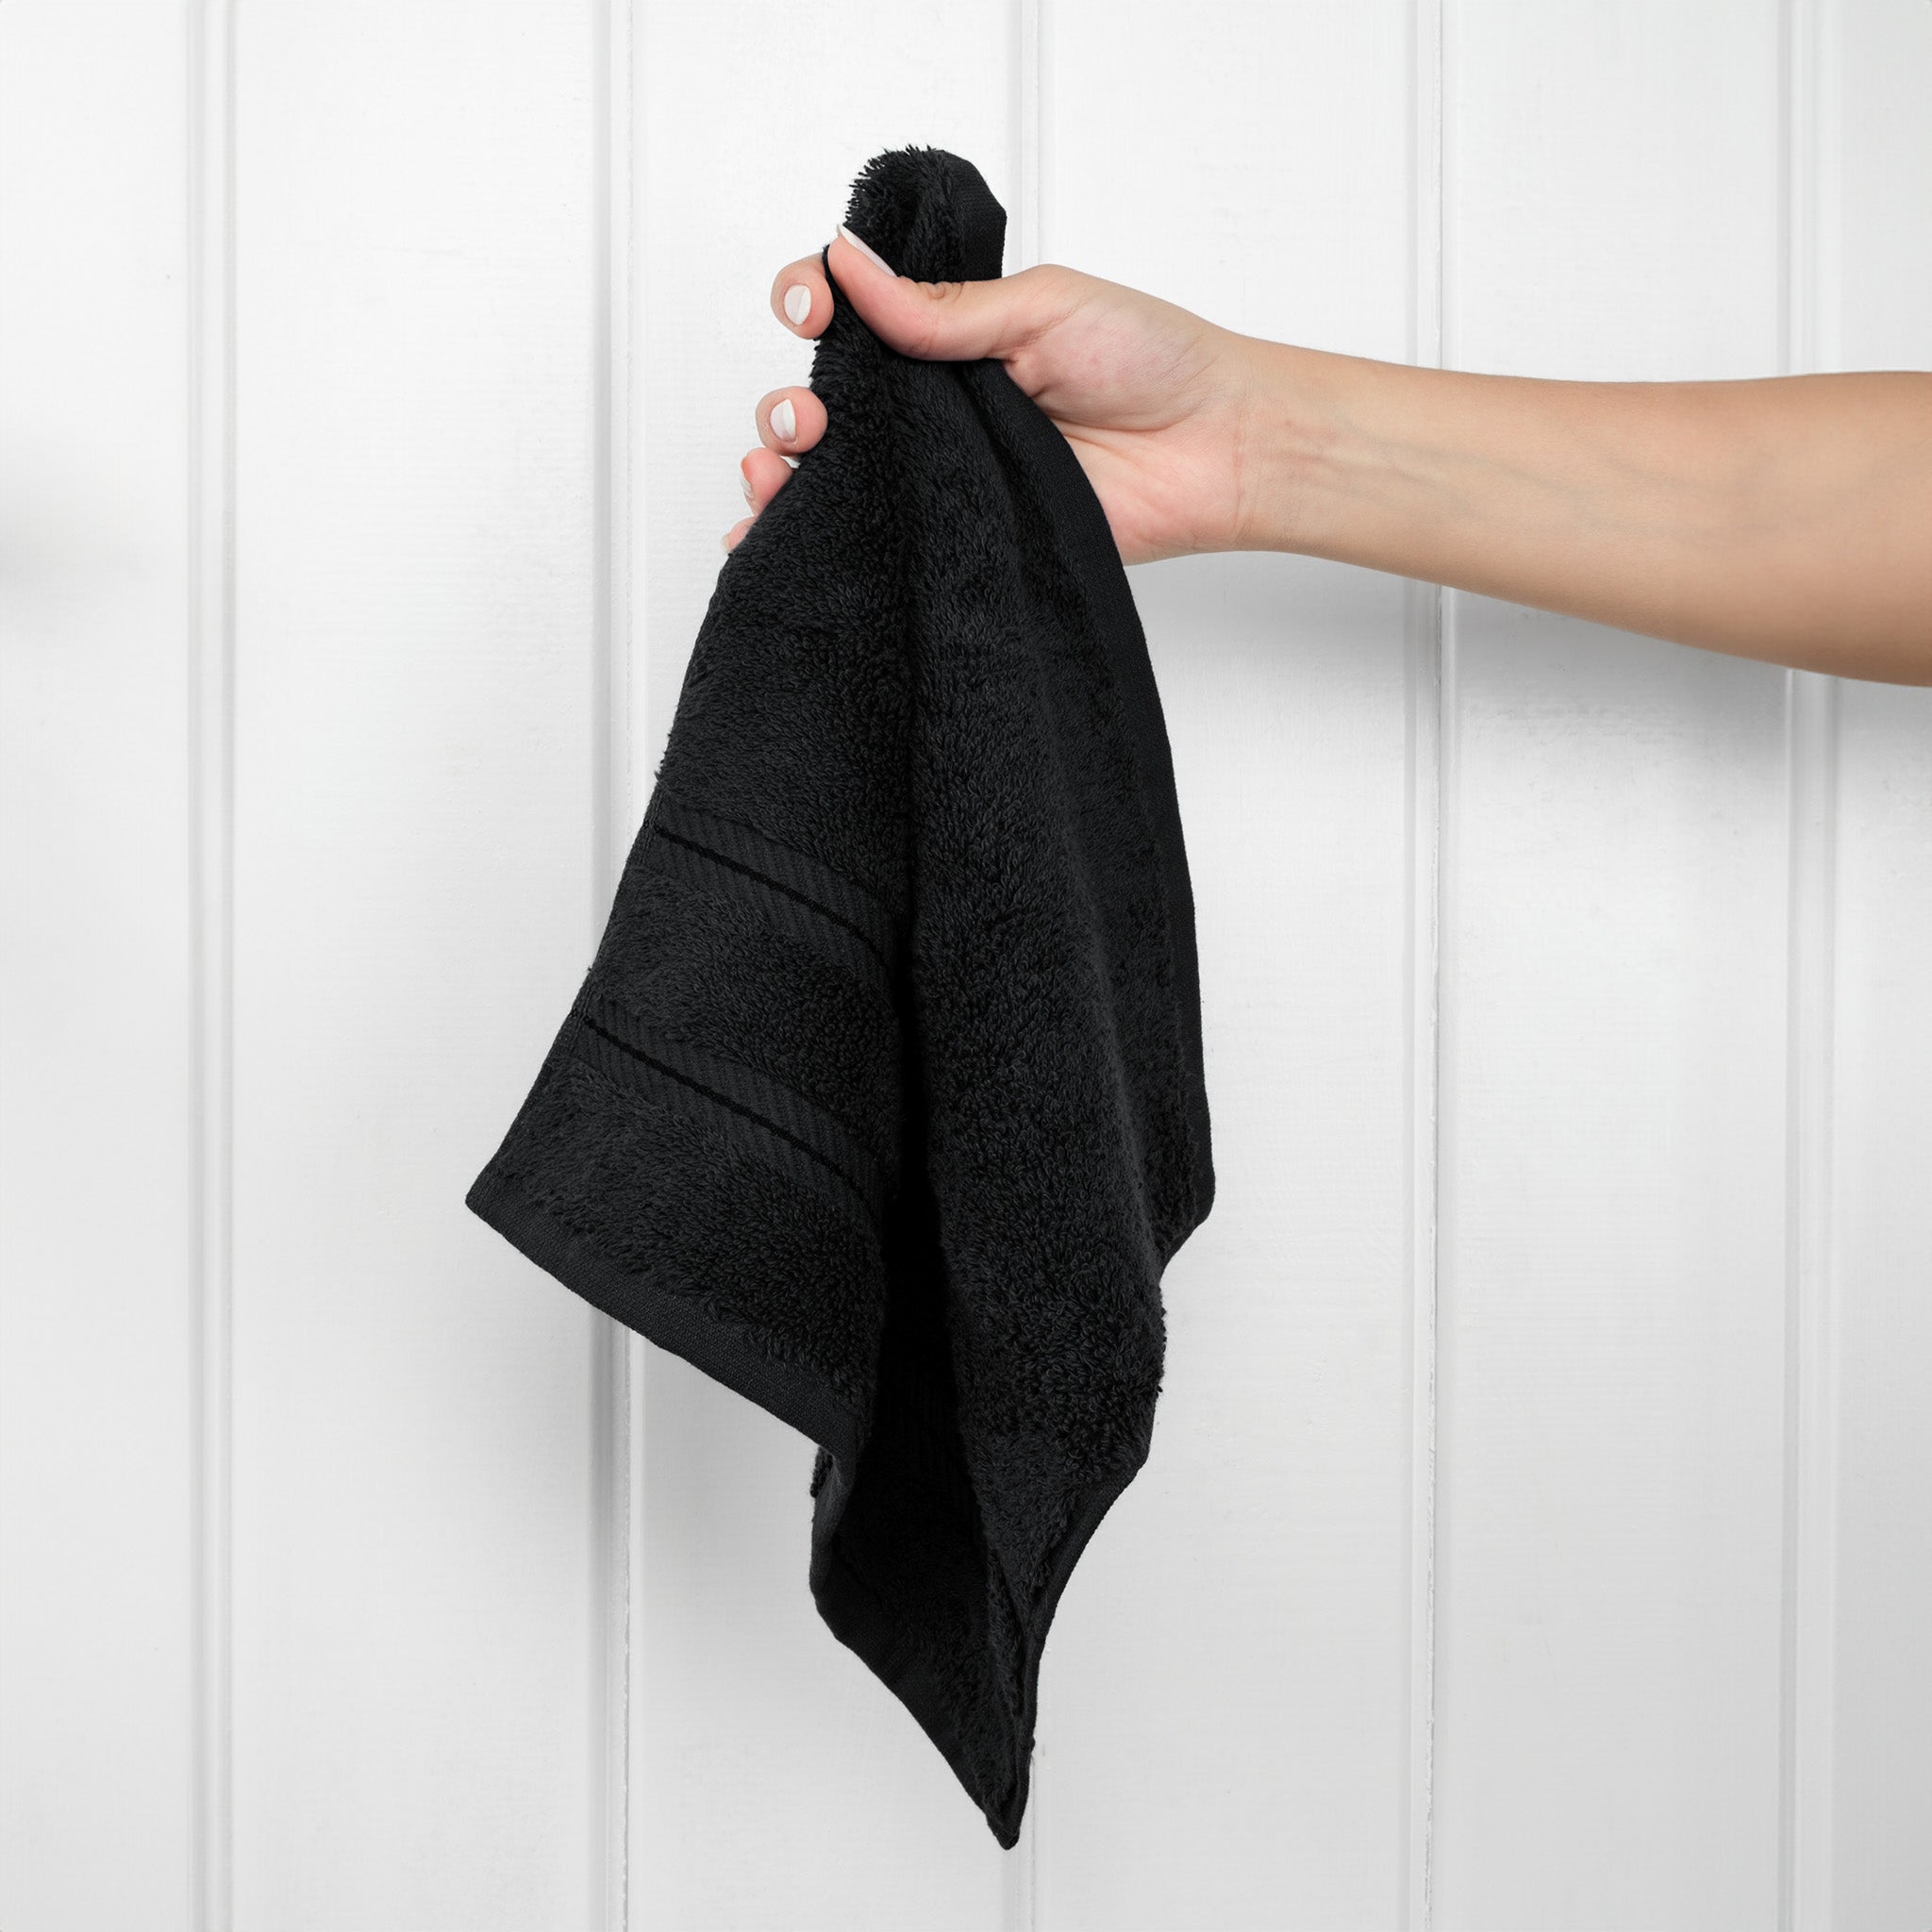 American Soft Linen 100% Turkish Cotton 4 Piece Washcloth Set black-2